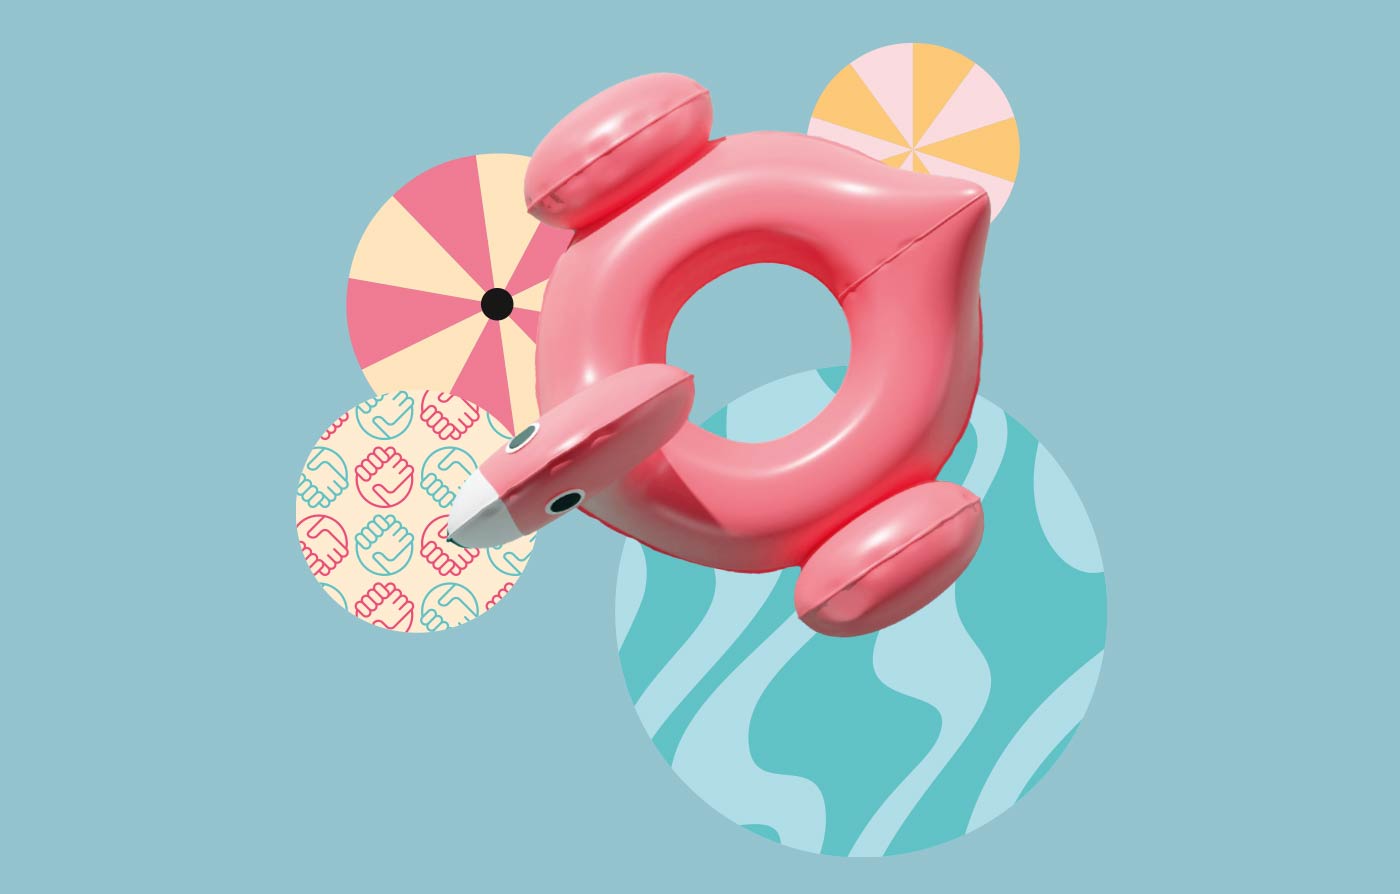 Vogelperspektive auf einen aufgeblasenen Flamingo und Sonnenschirme.